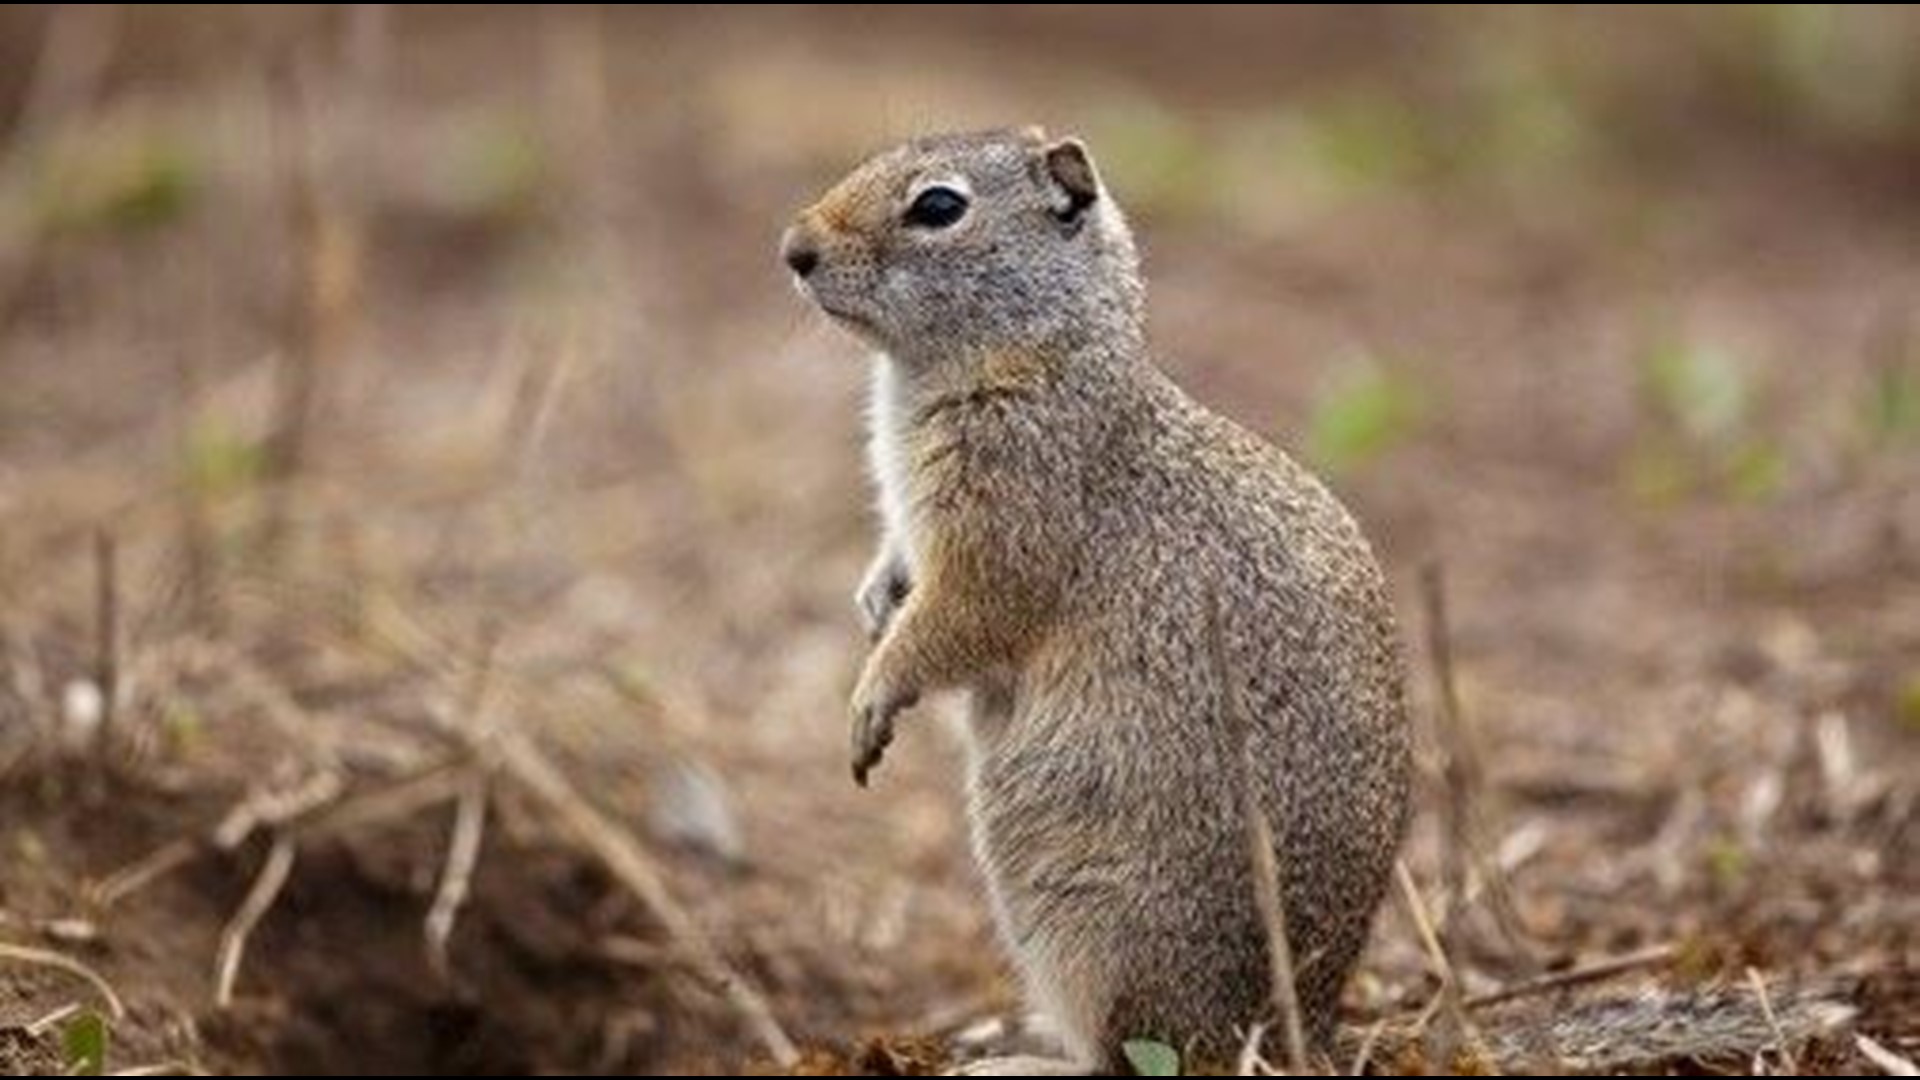 Threatened Ground Squirrel Could Halt Idaho Dam Expansion